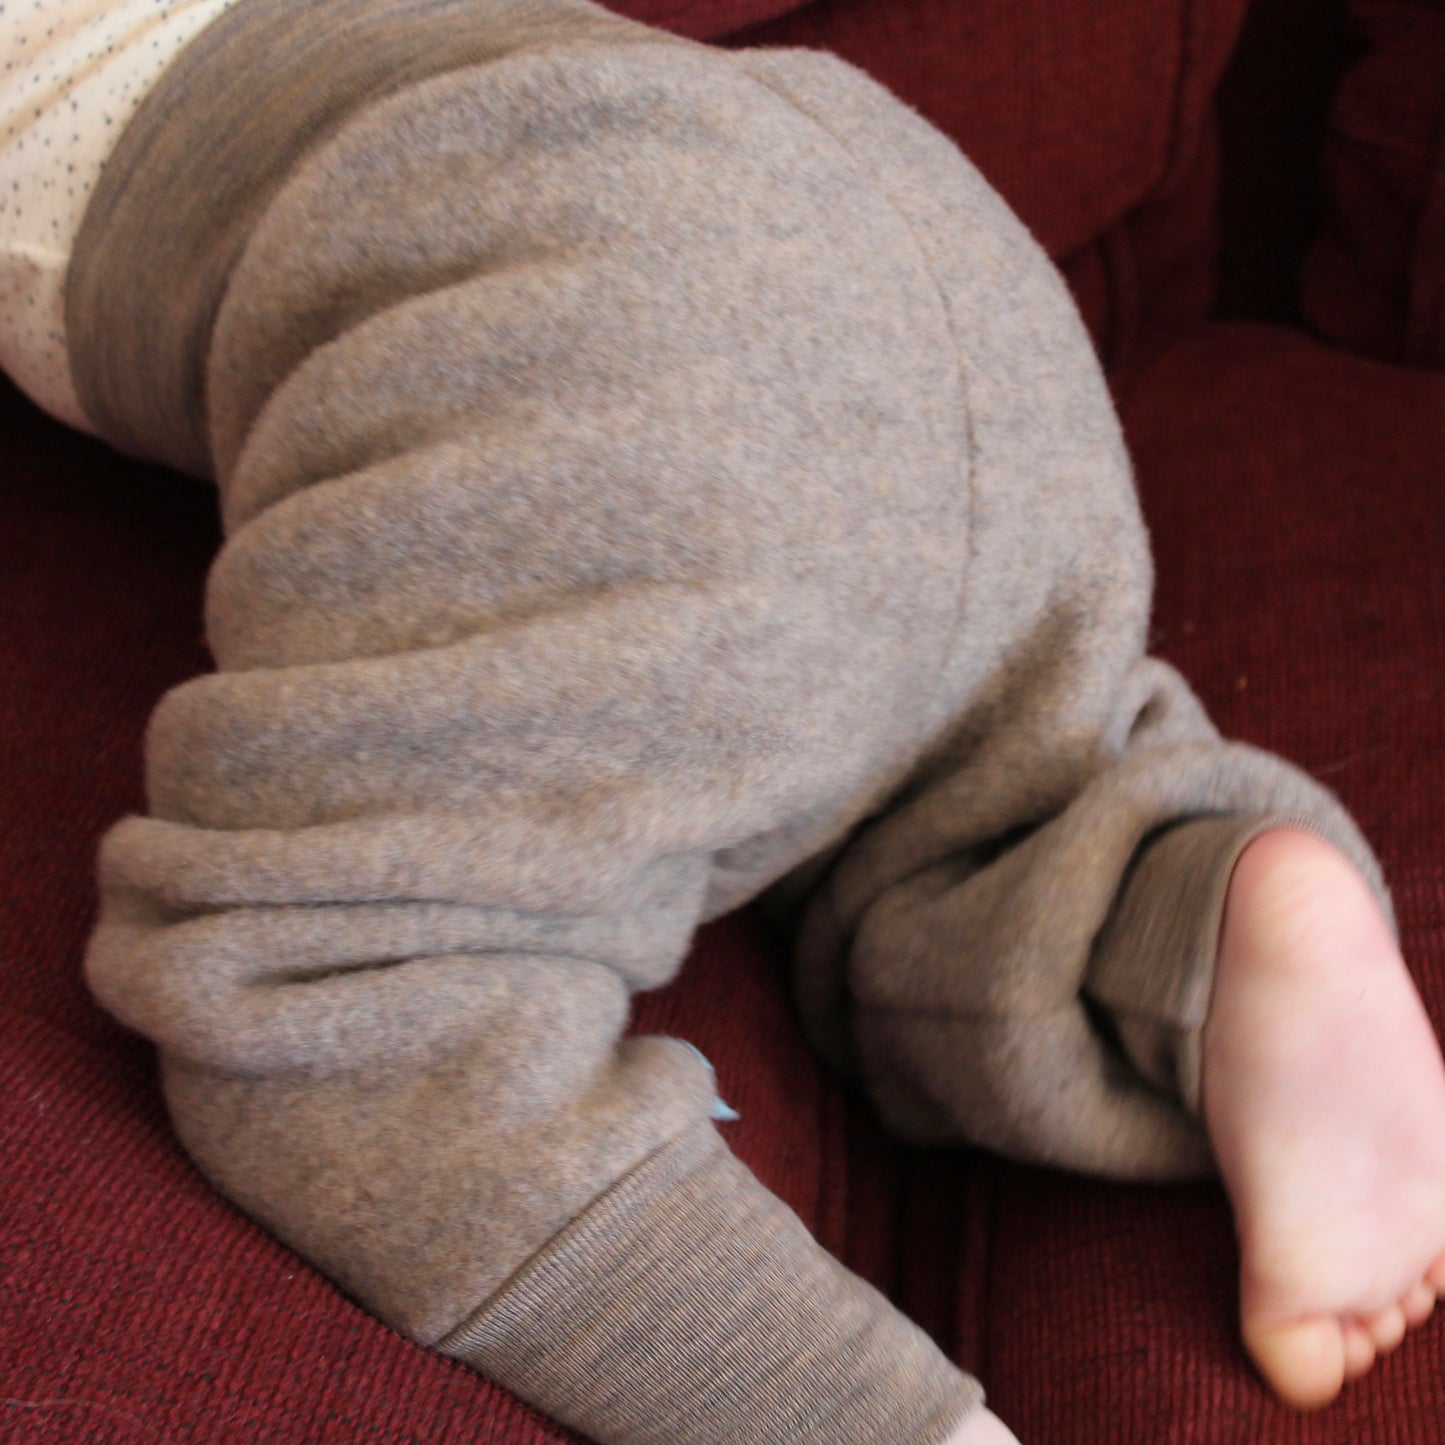 Engel Baby/Toddler Yoga Pants, Wool Fleece